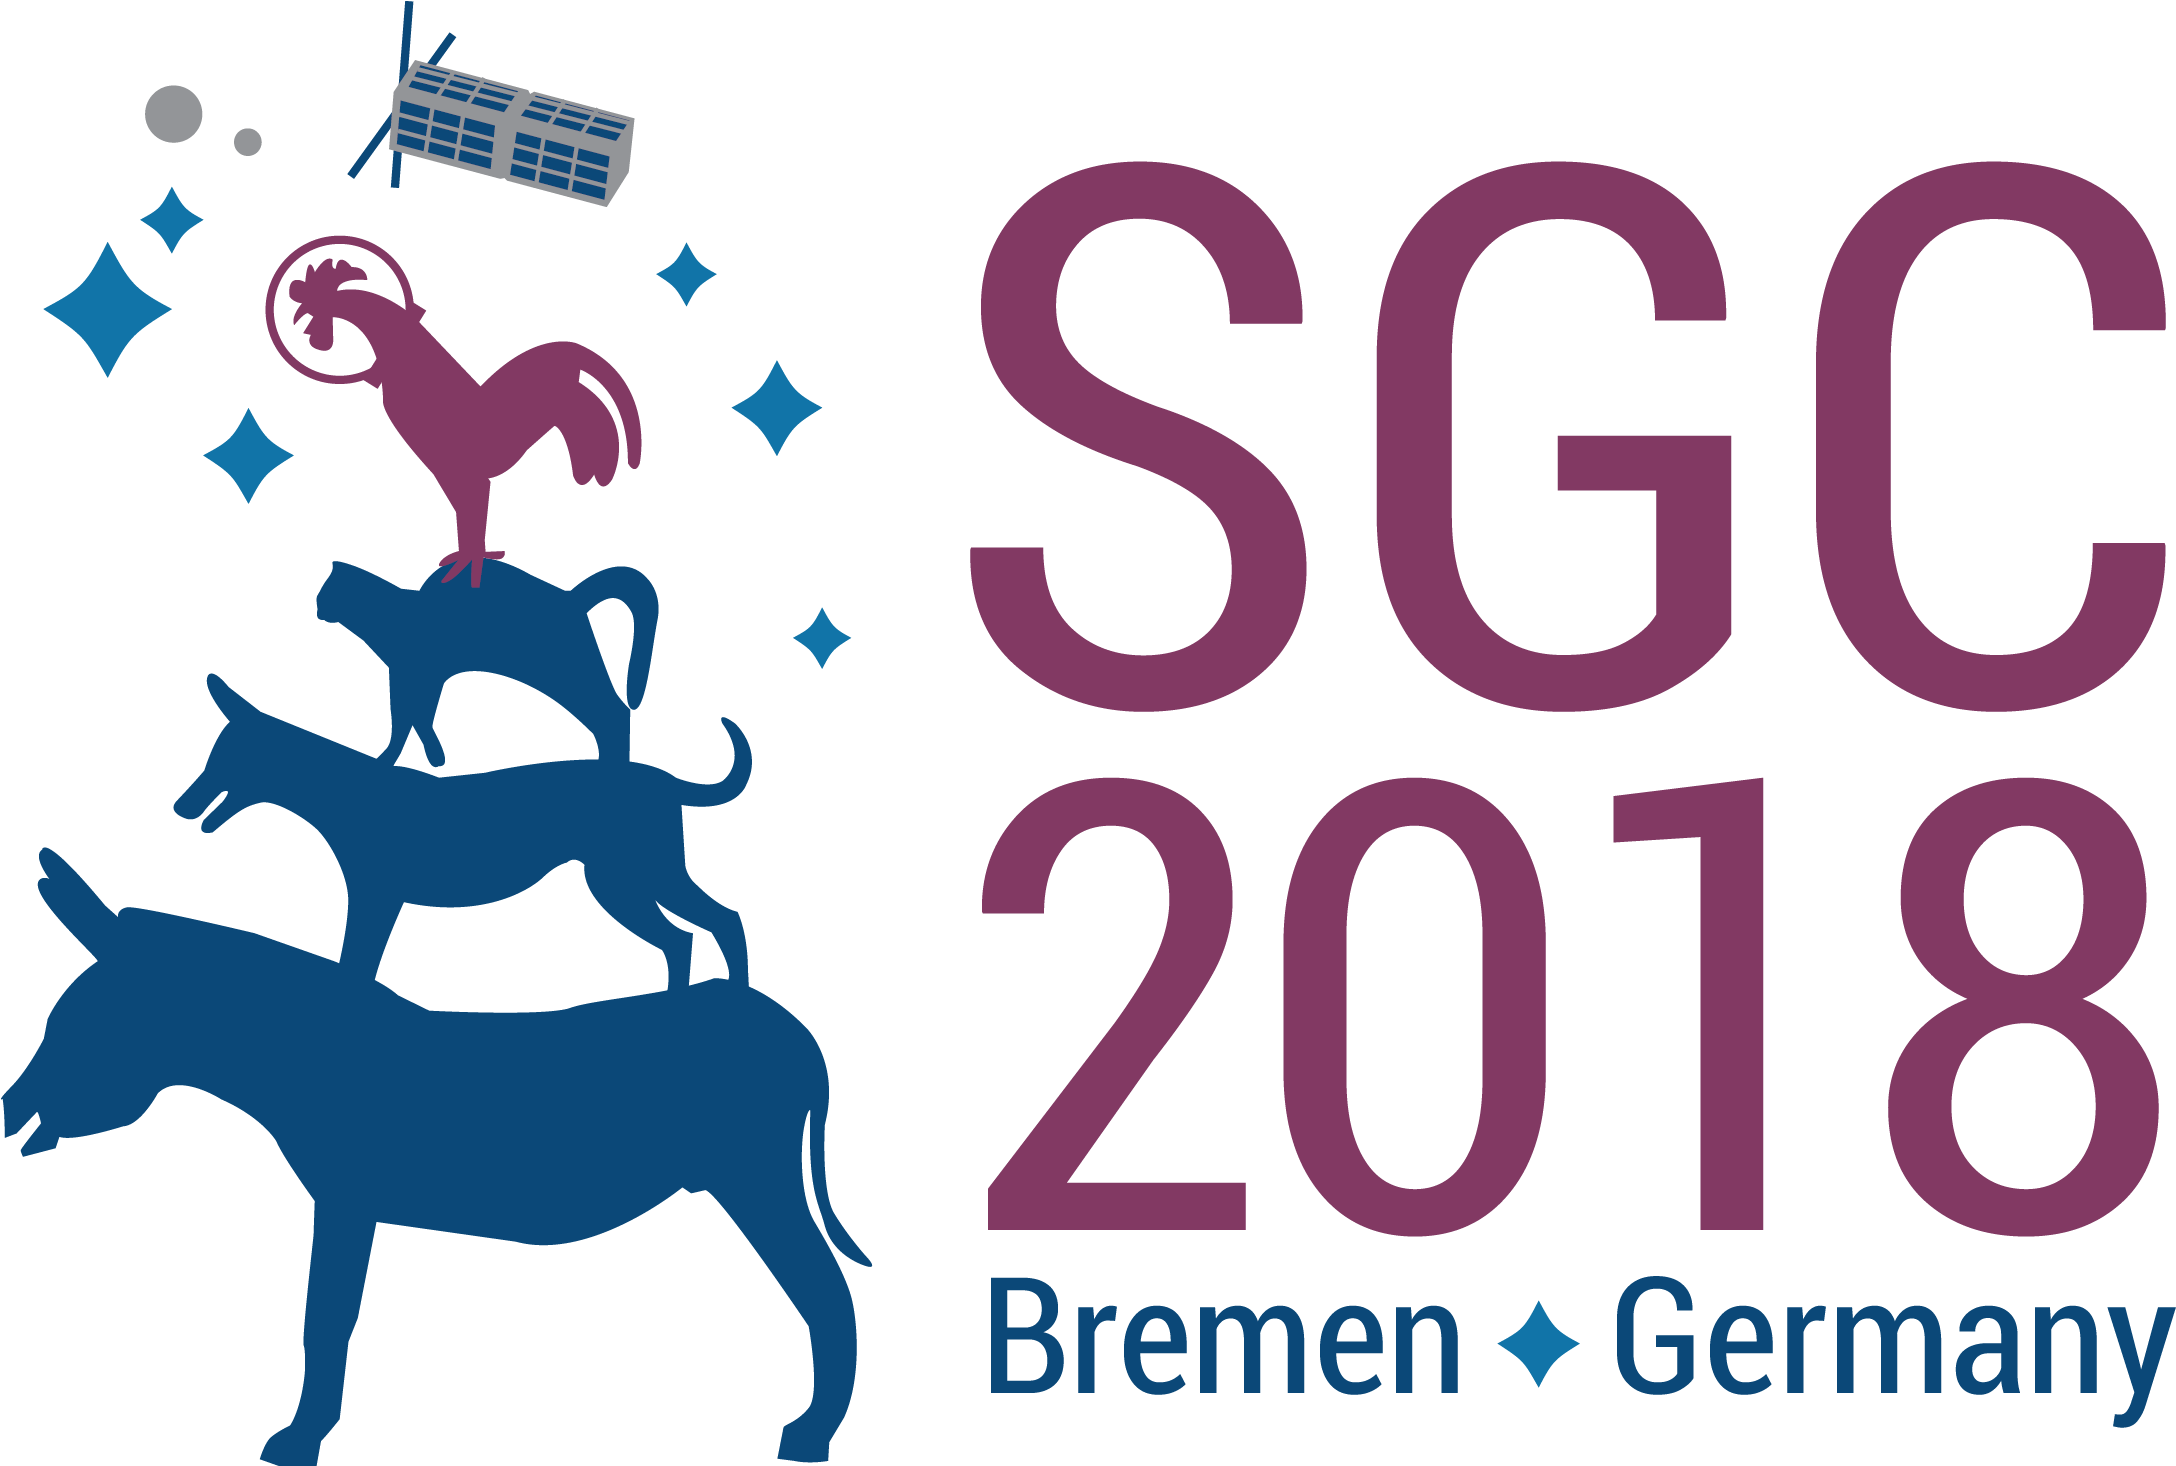 Space Generation Congress 2018 - Space Generation Congress 2018 (2194x1465)